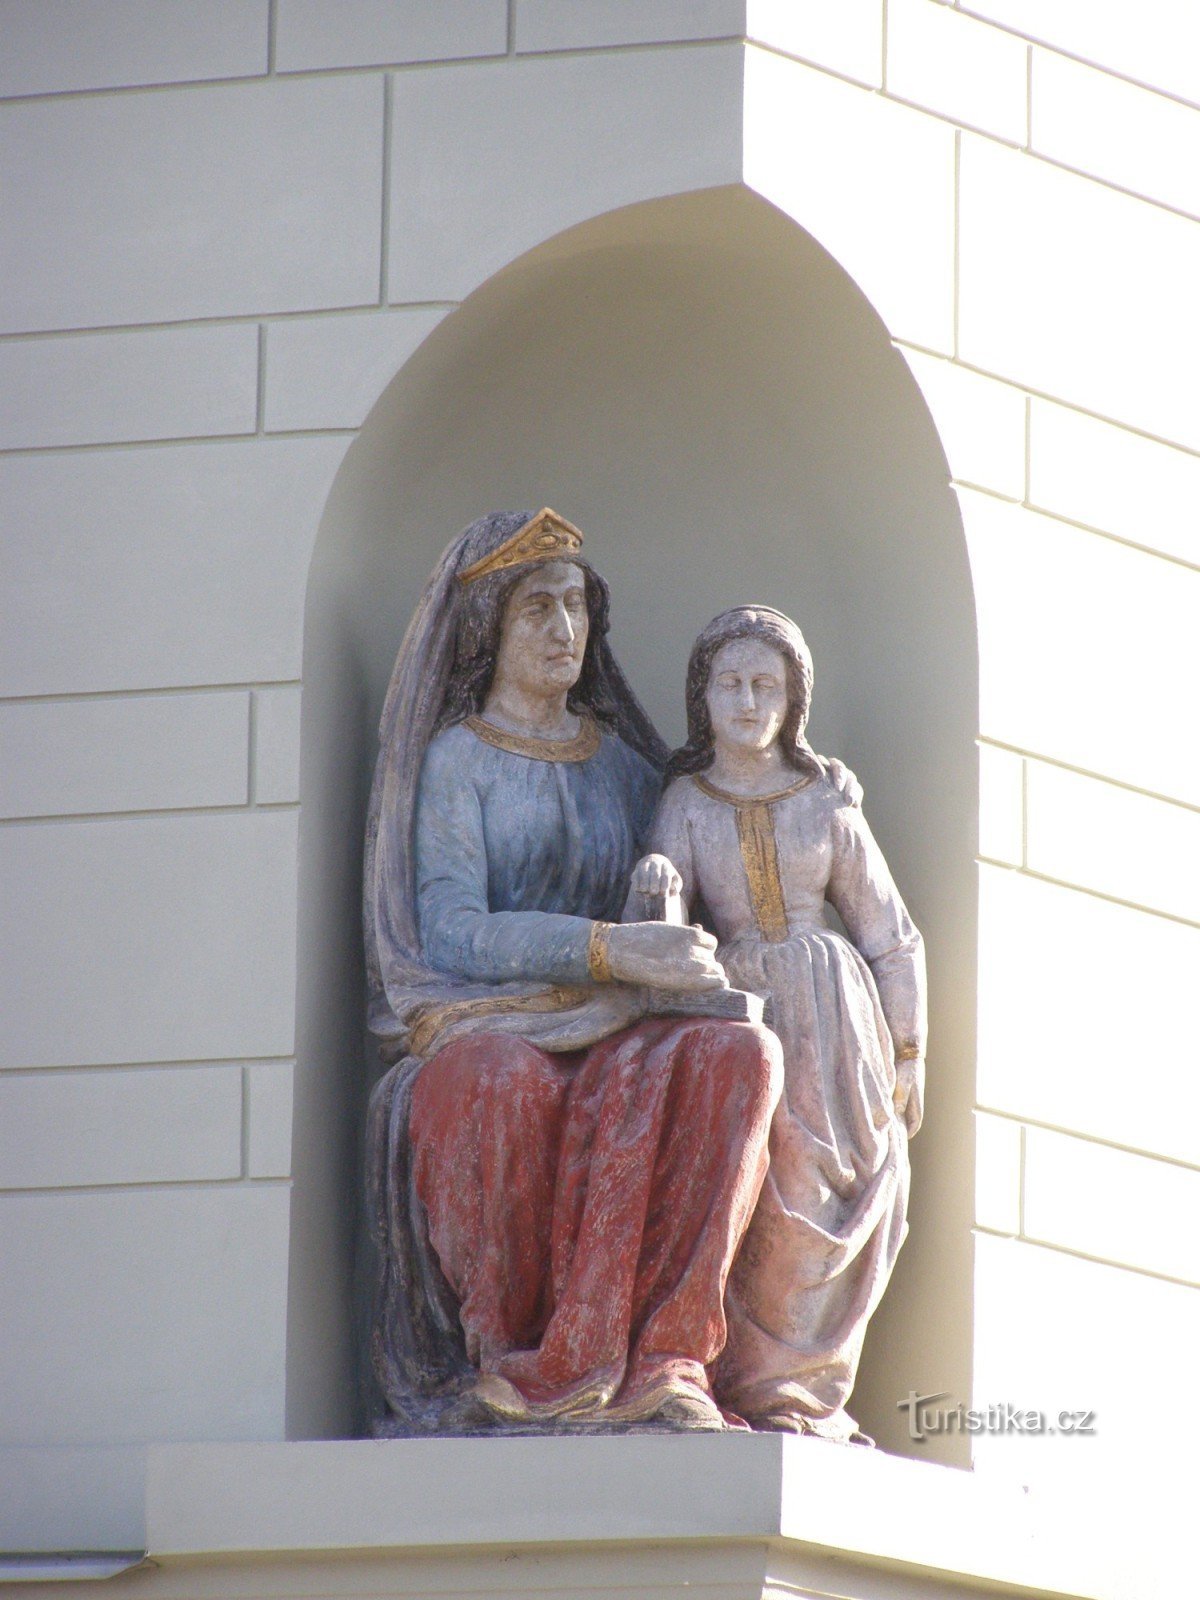 Týnec nad Labem - 158 号市民住宅，内有圣约翰雕像安妮教圣母玛利亚